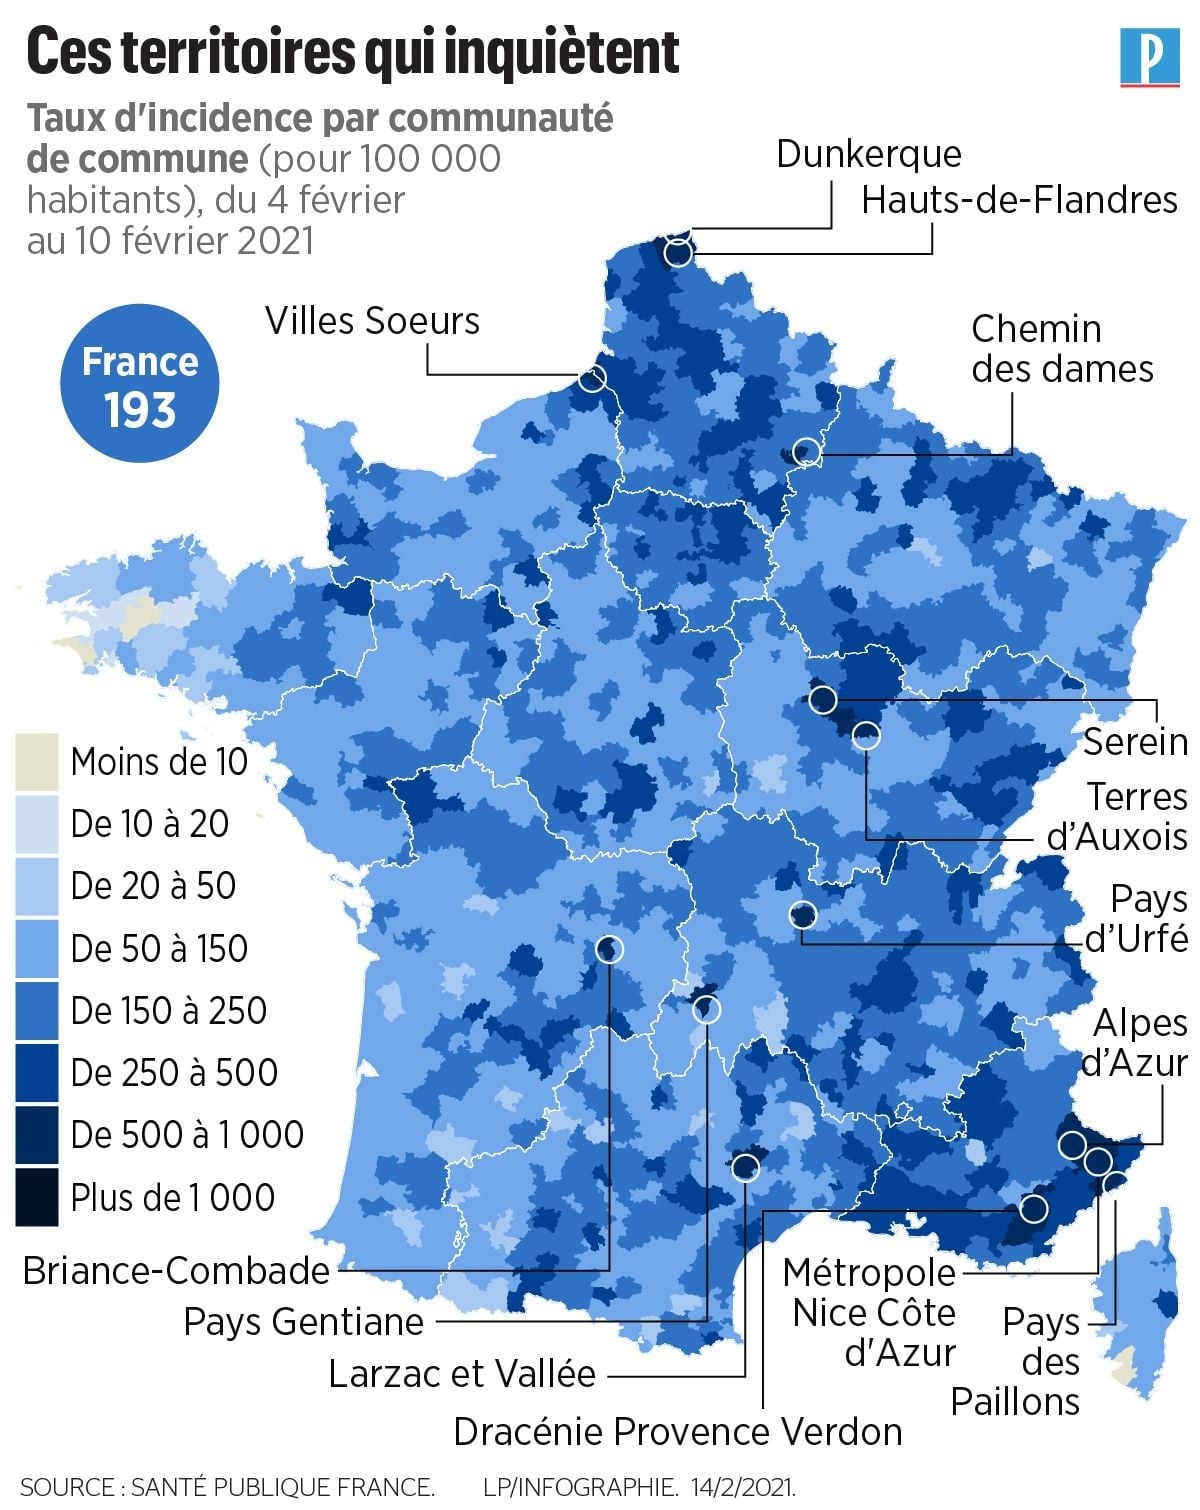 2021 年 2 月 4 日到 10 日法國市鎮公共社區每 10 萬人確診數 (Le Parisien)